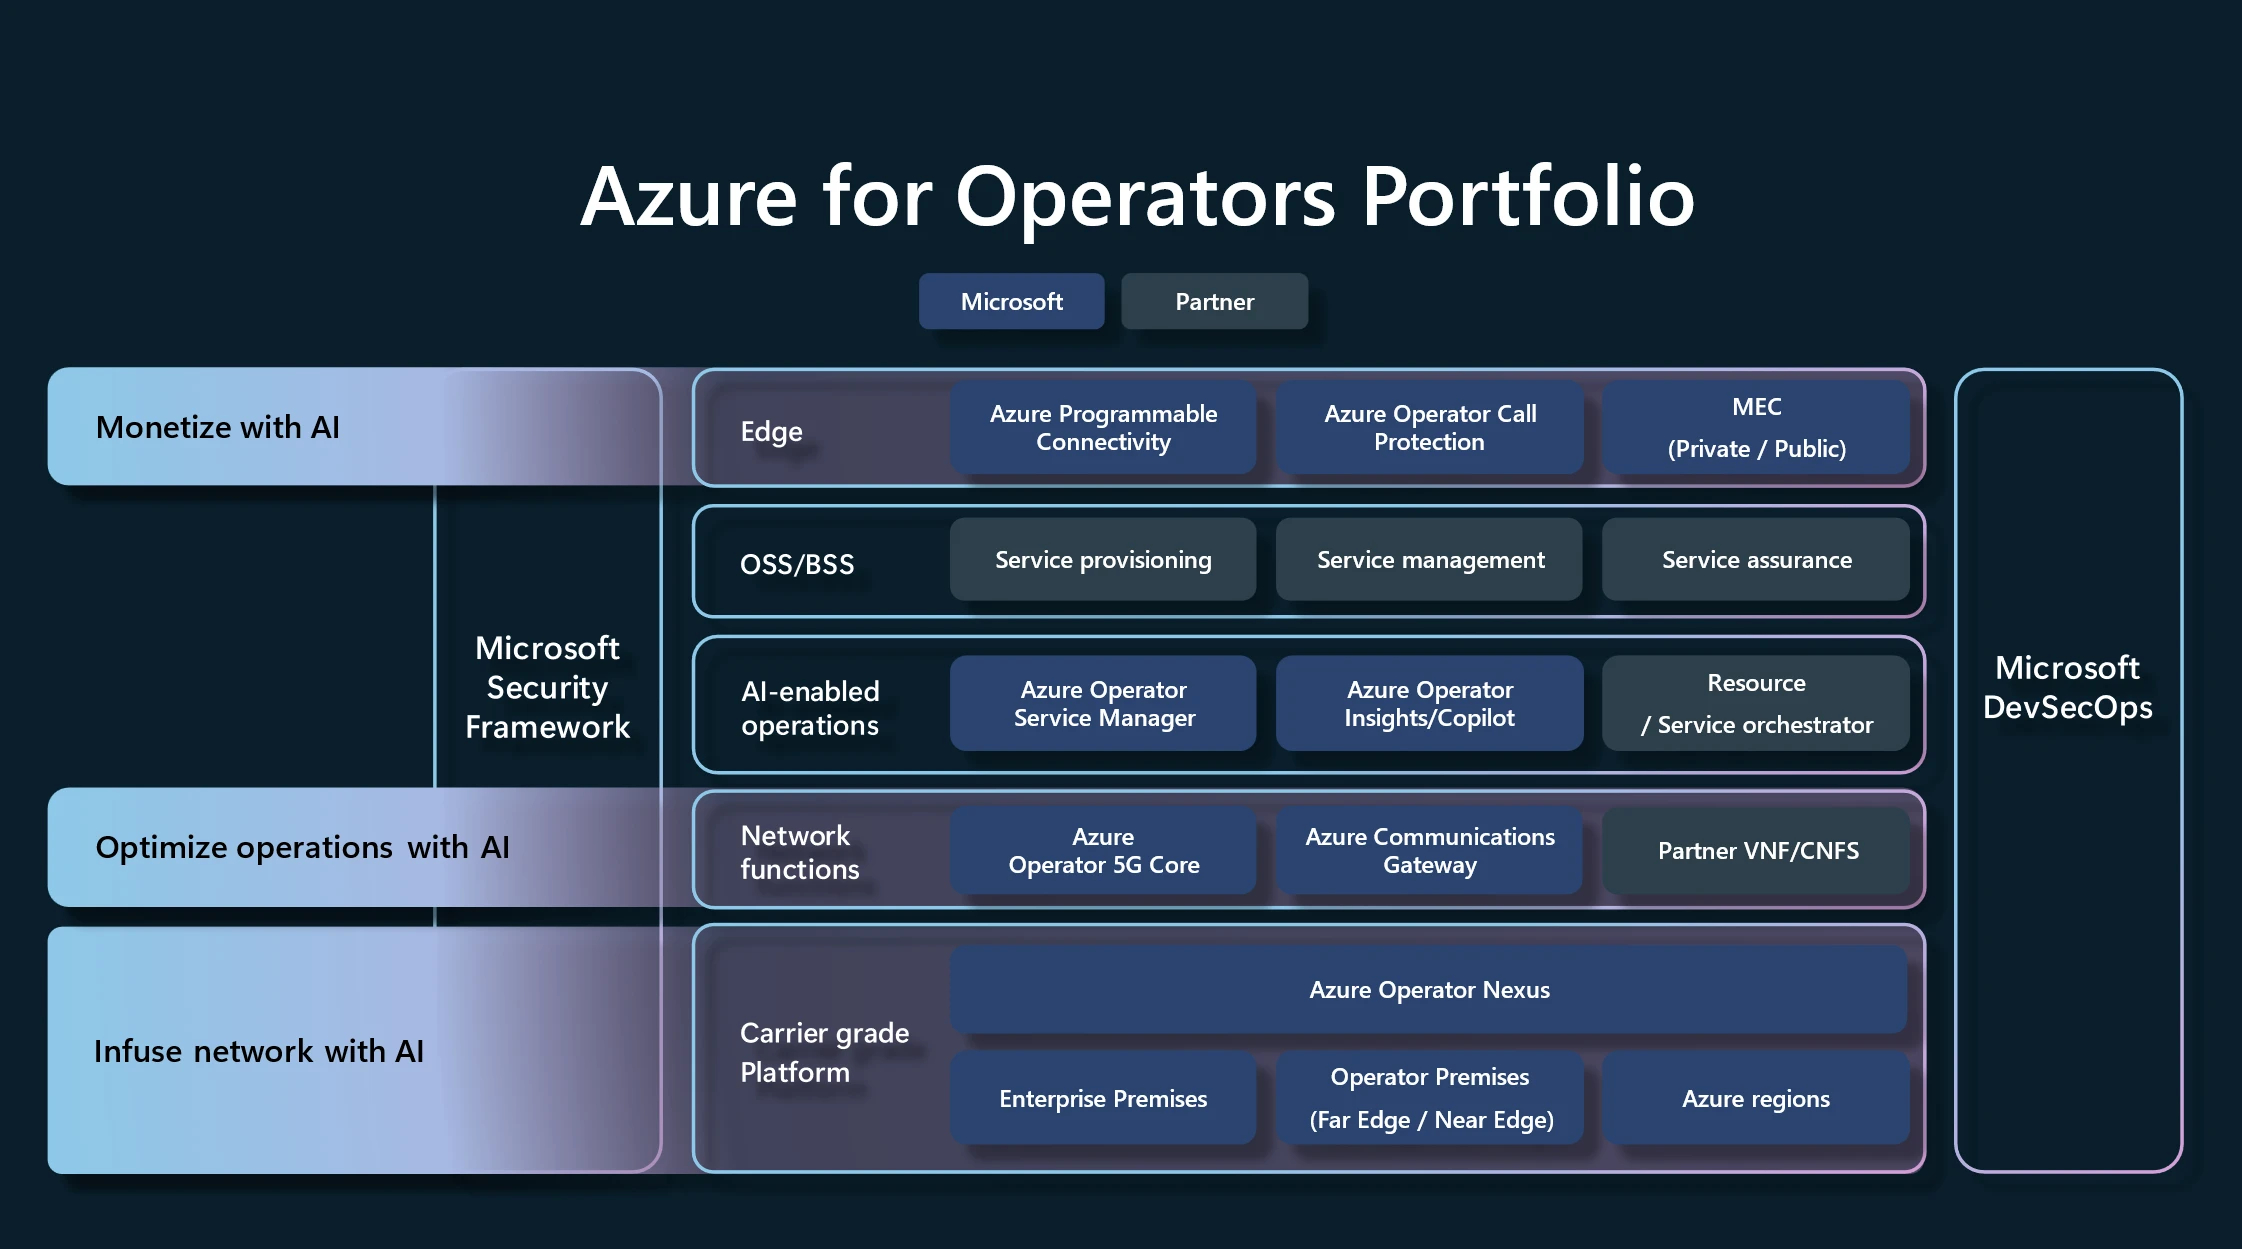 Azure for Operators Portfolio